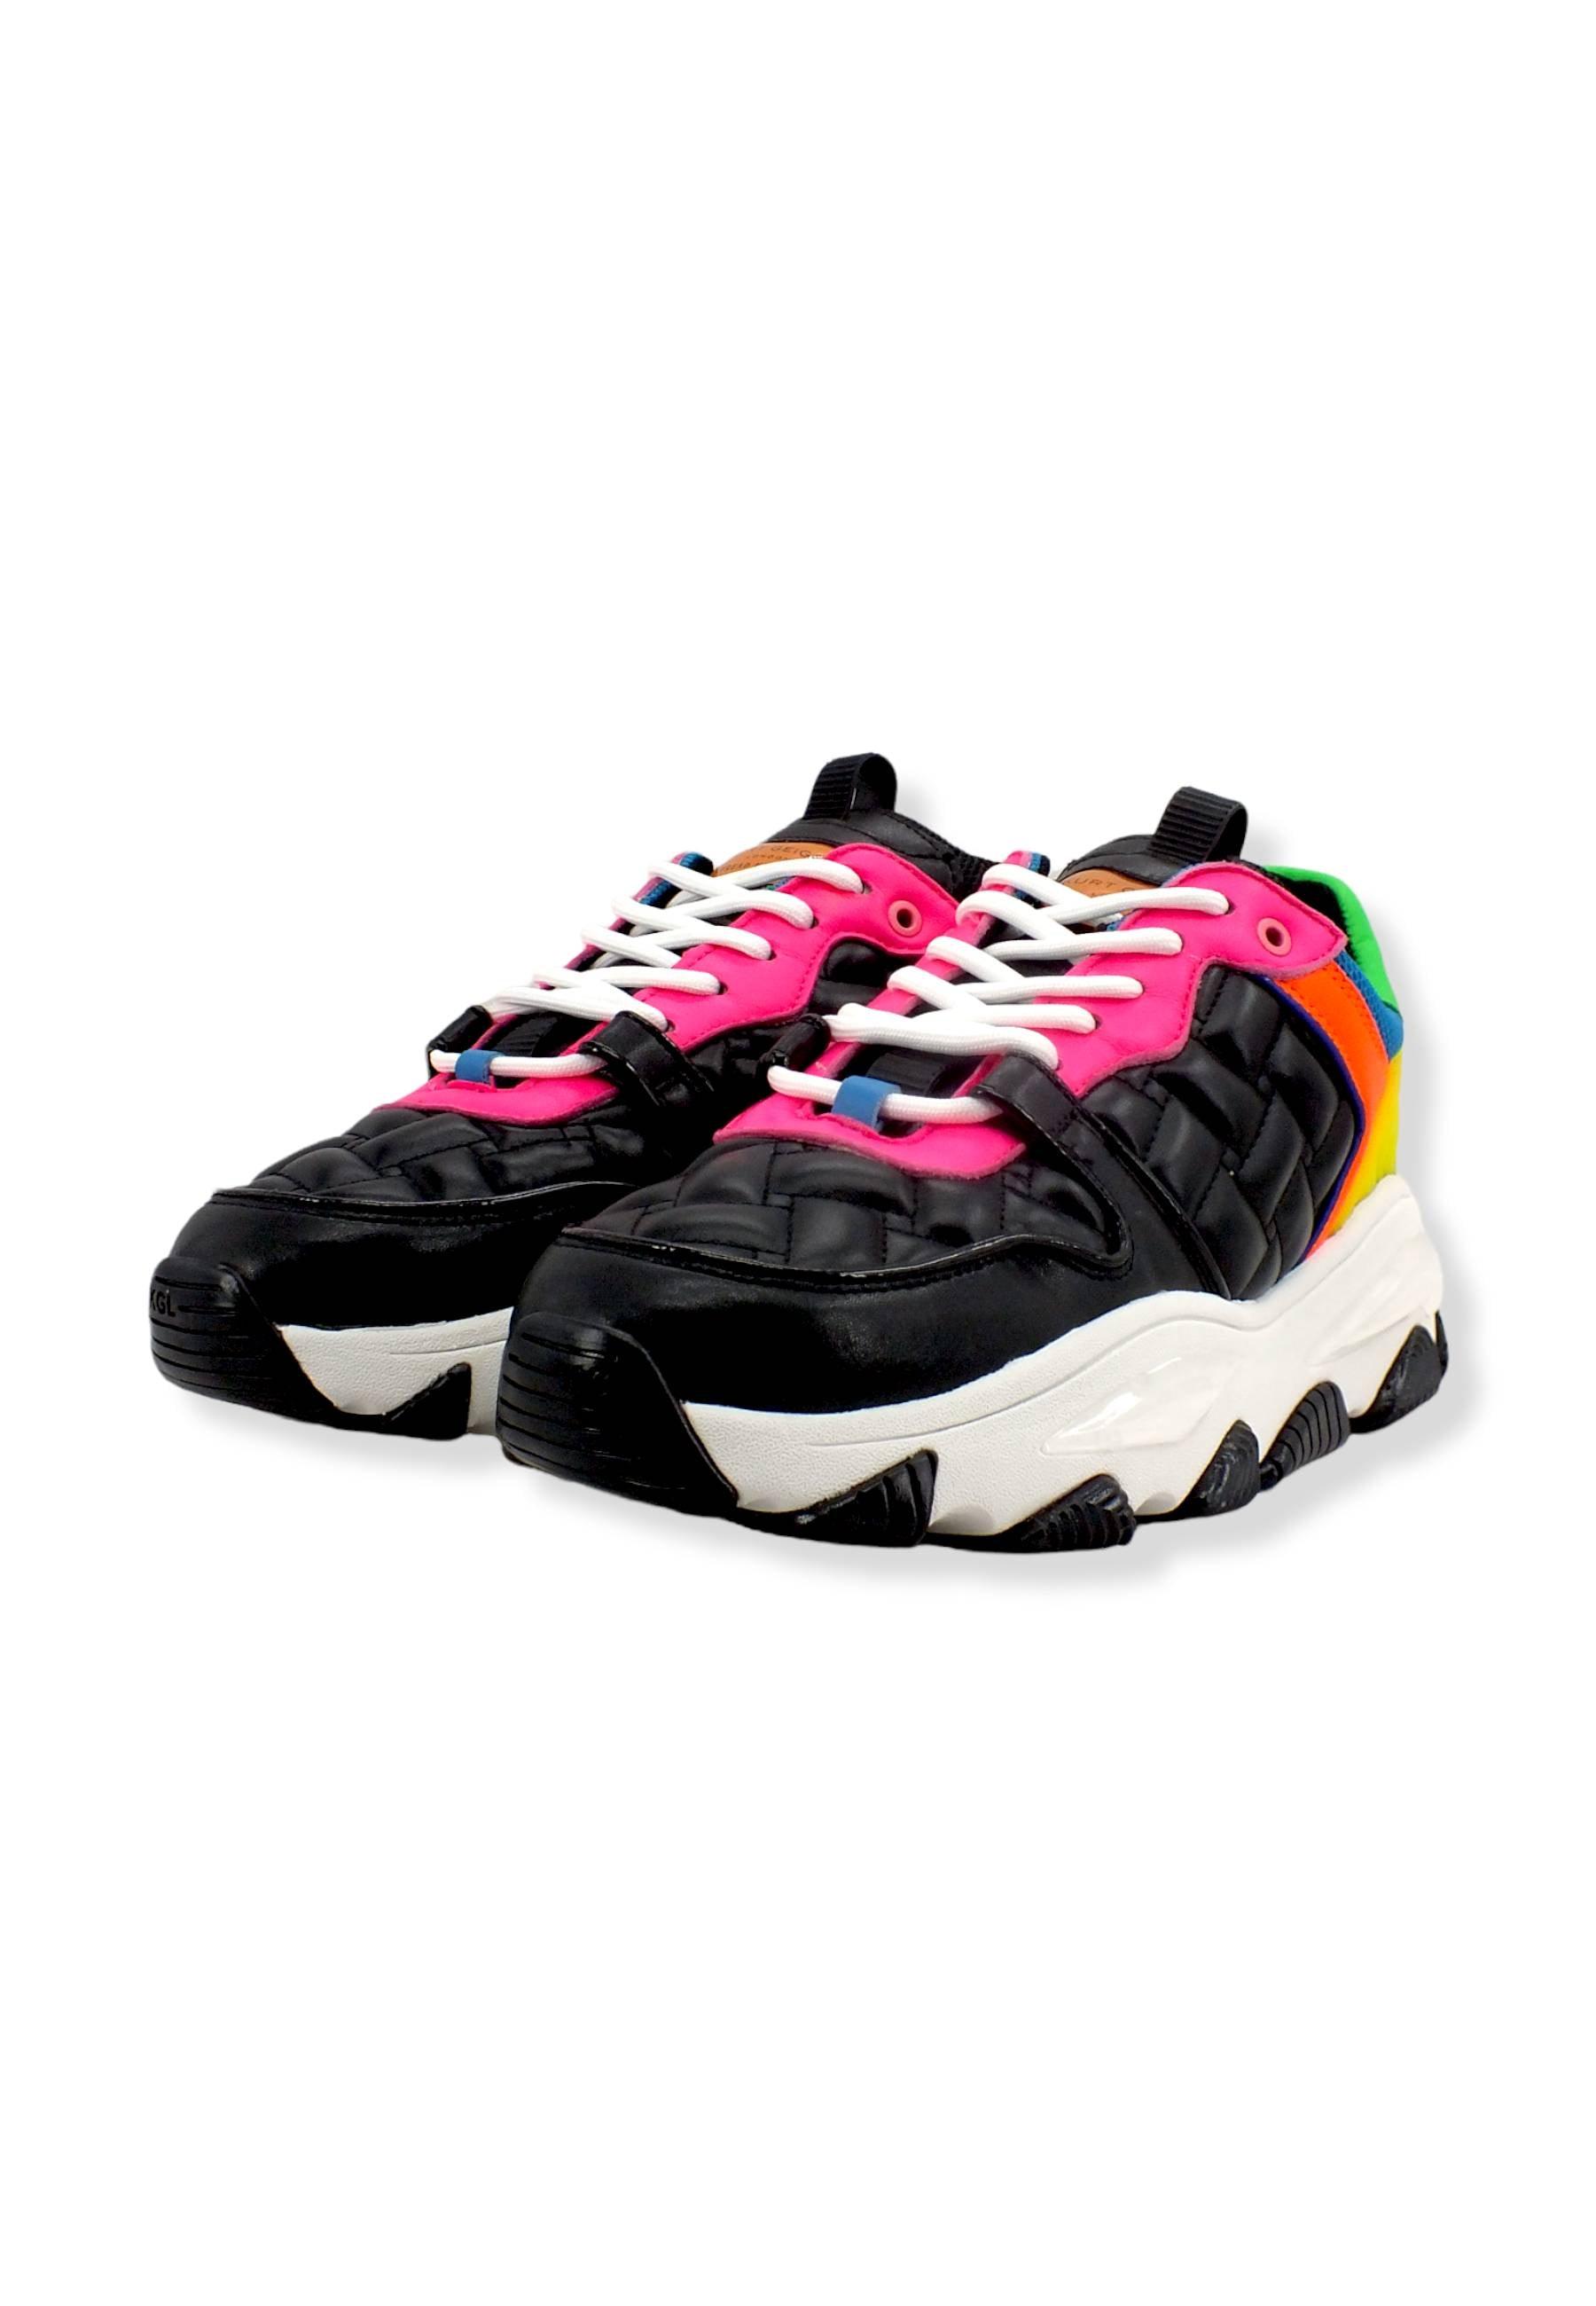 KURT GEIGER Lettie Egle Sneaker Donna Multicolor Black Other 8880309109 - Sandrini Calzature e Abbigliamento